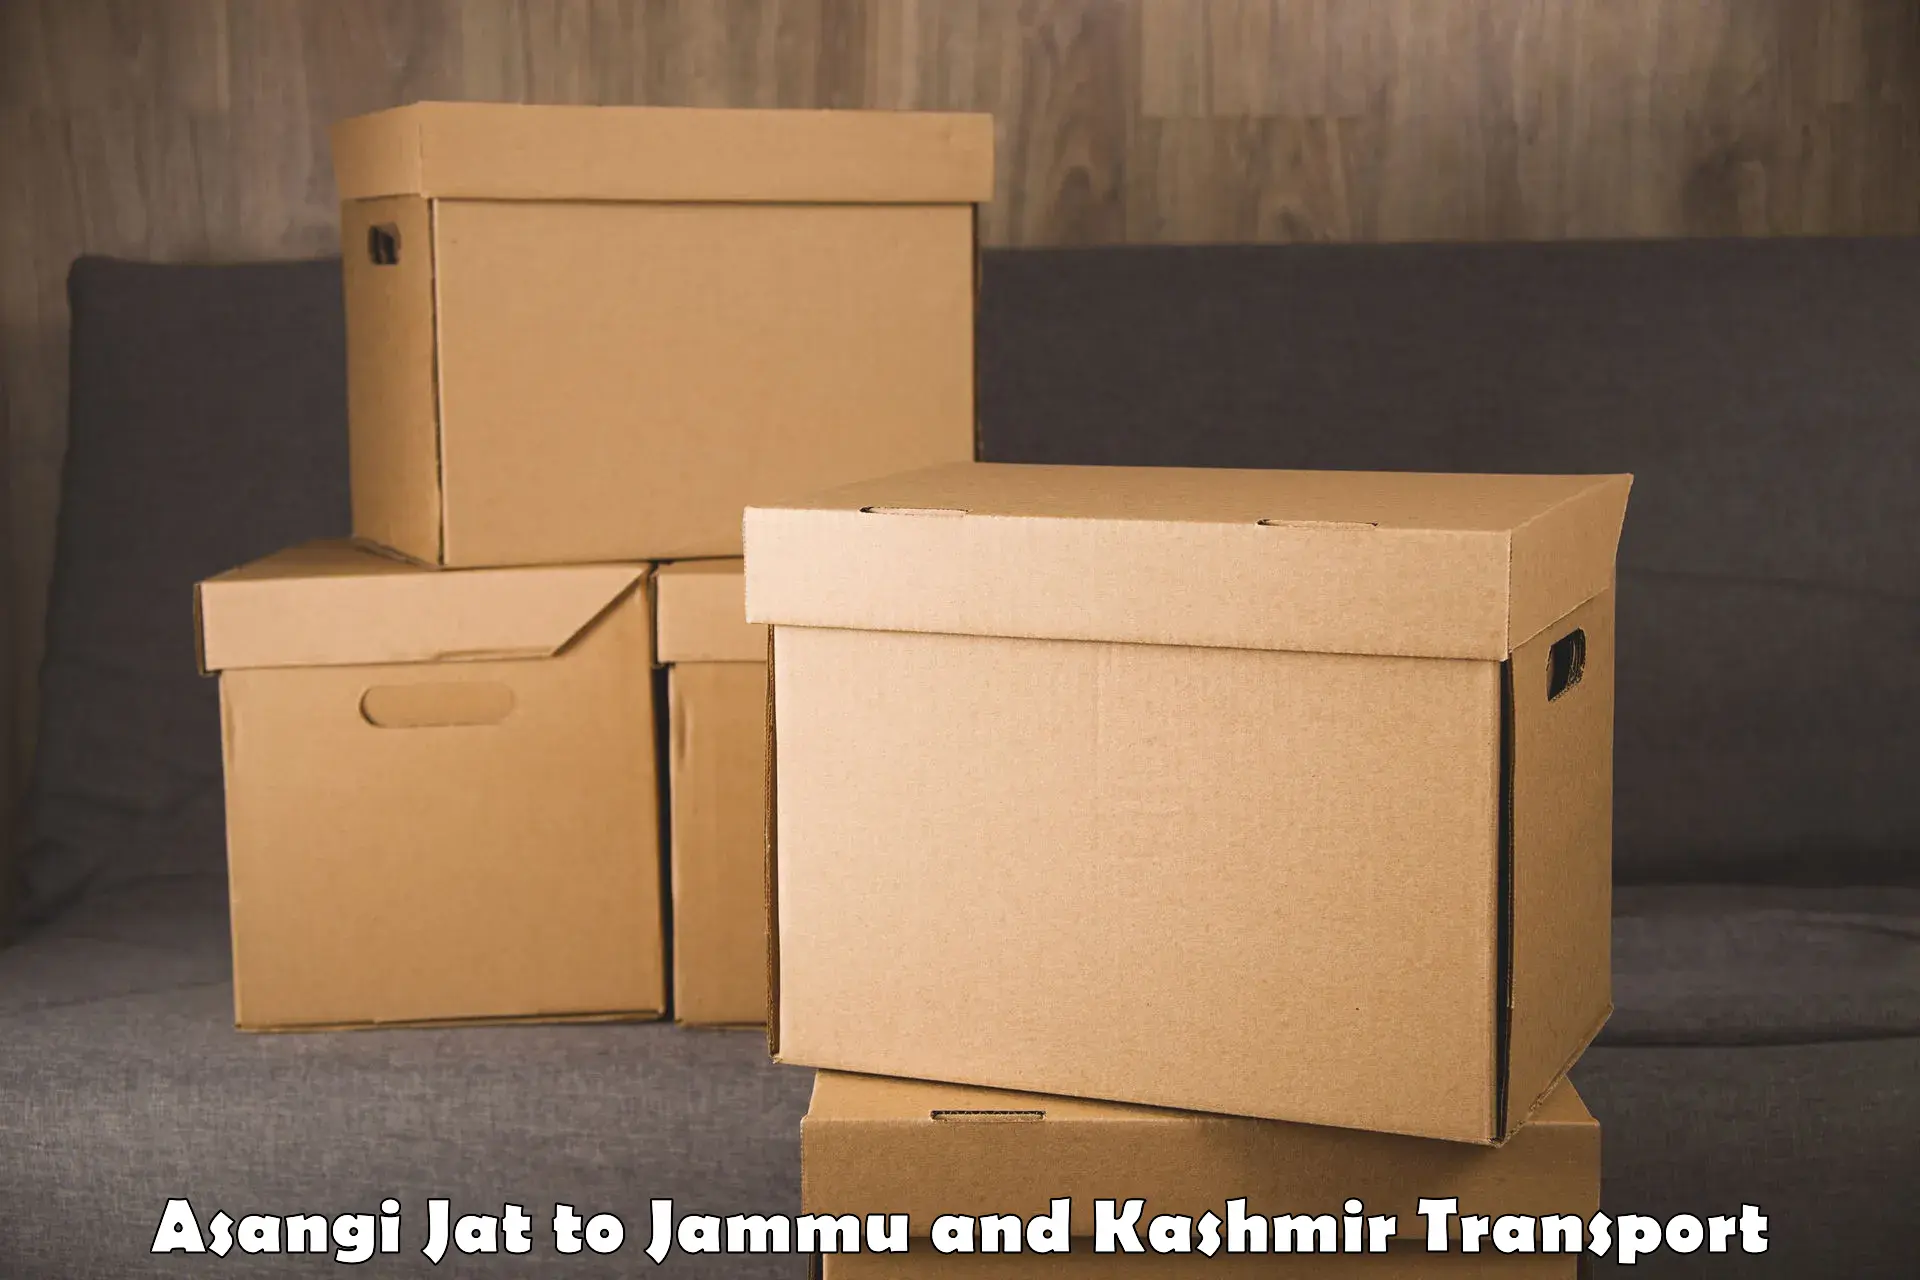 Container transport service Asangi Jat to Jammu and Kashmir